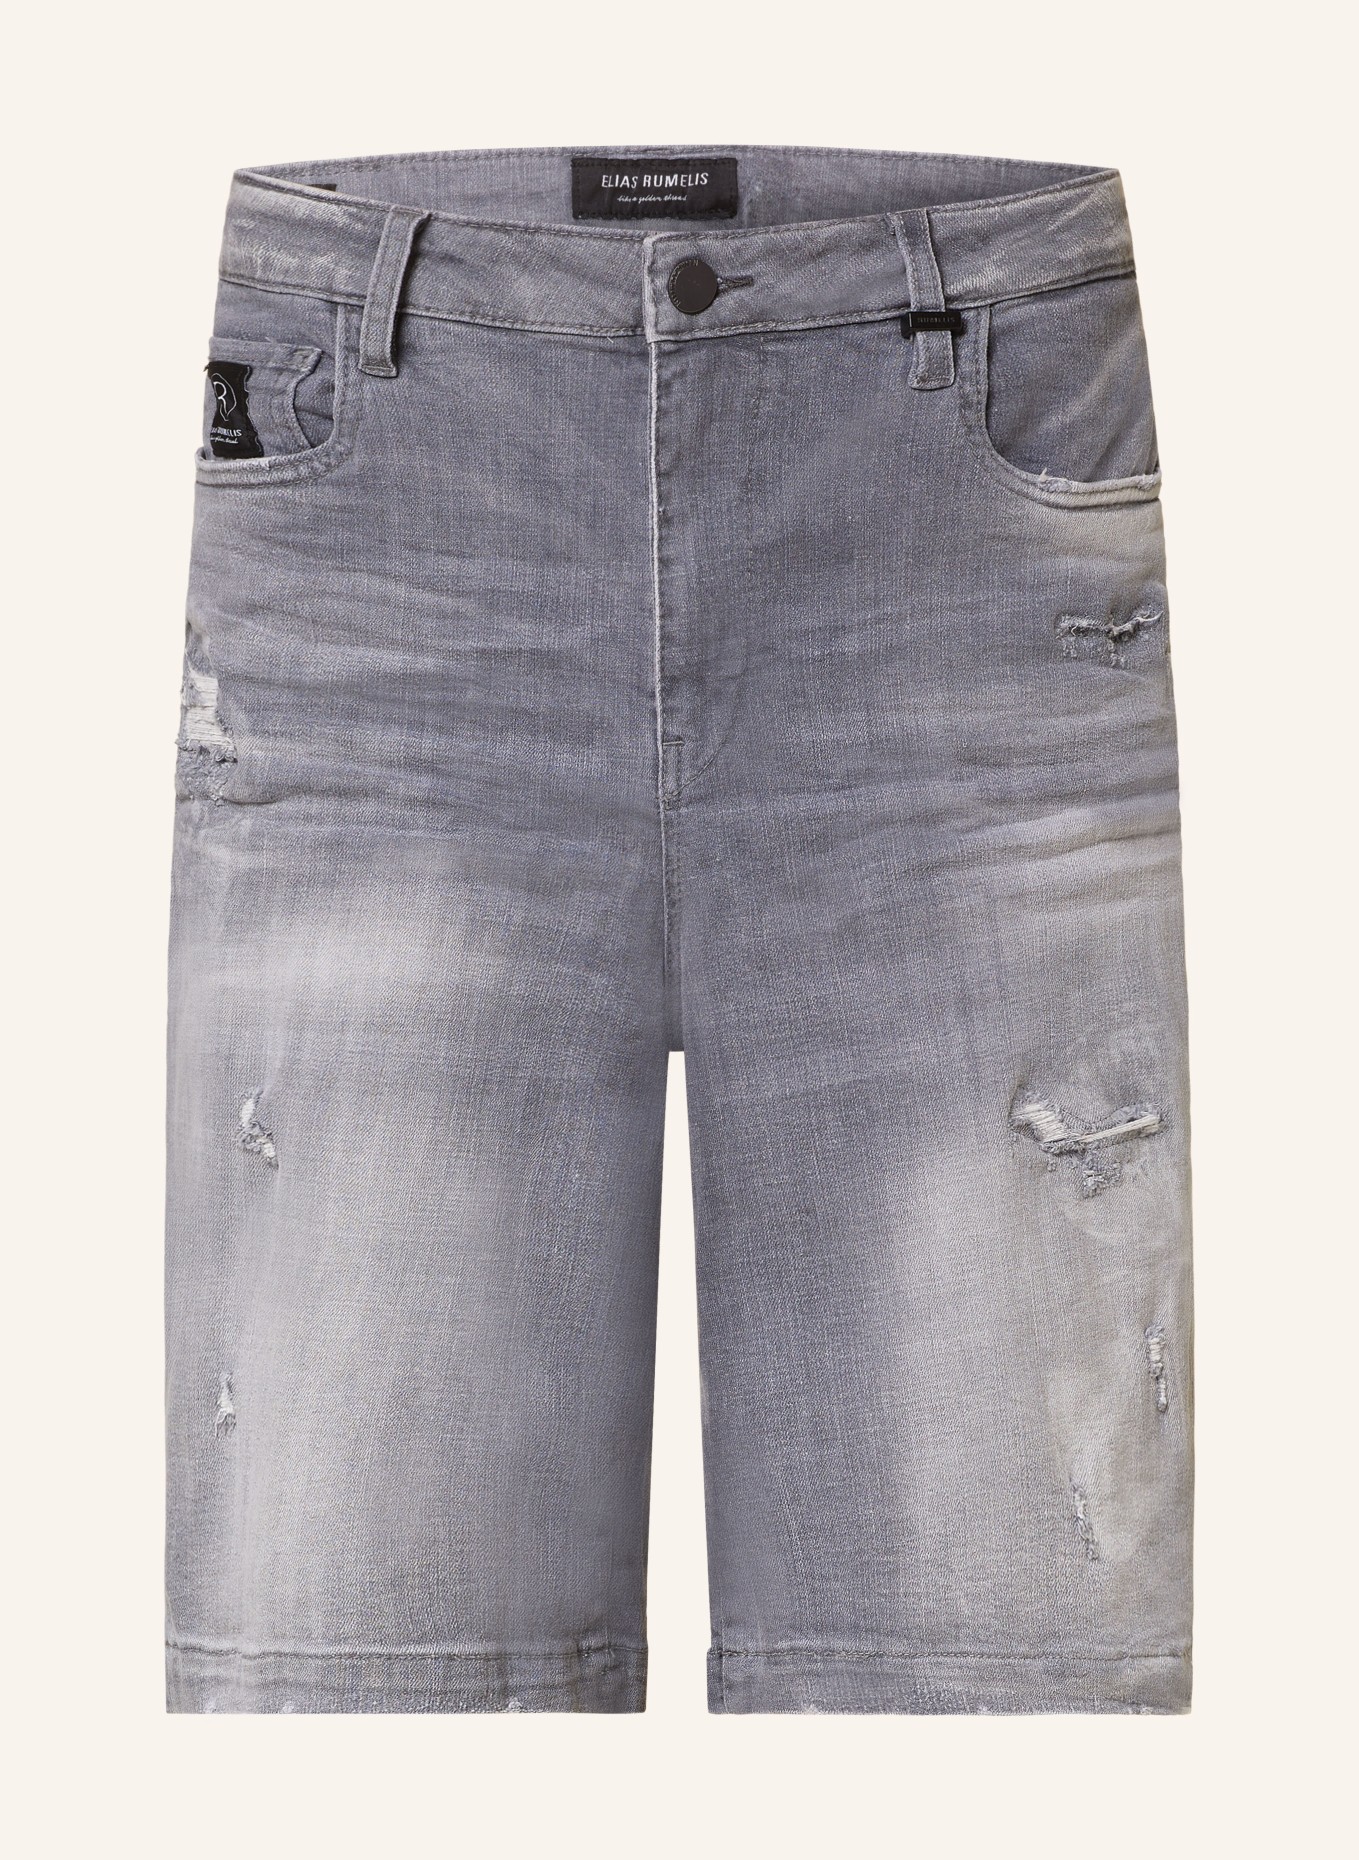 ELIAS RUMELIS Szorty jeansowe ERBAHAR, Kolor: 471 Dove Grey (Obrazek 1)